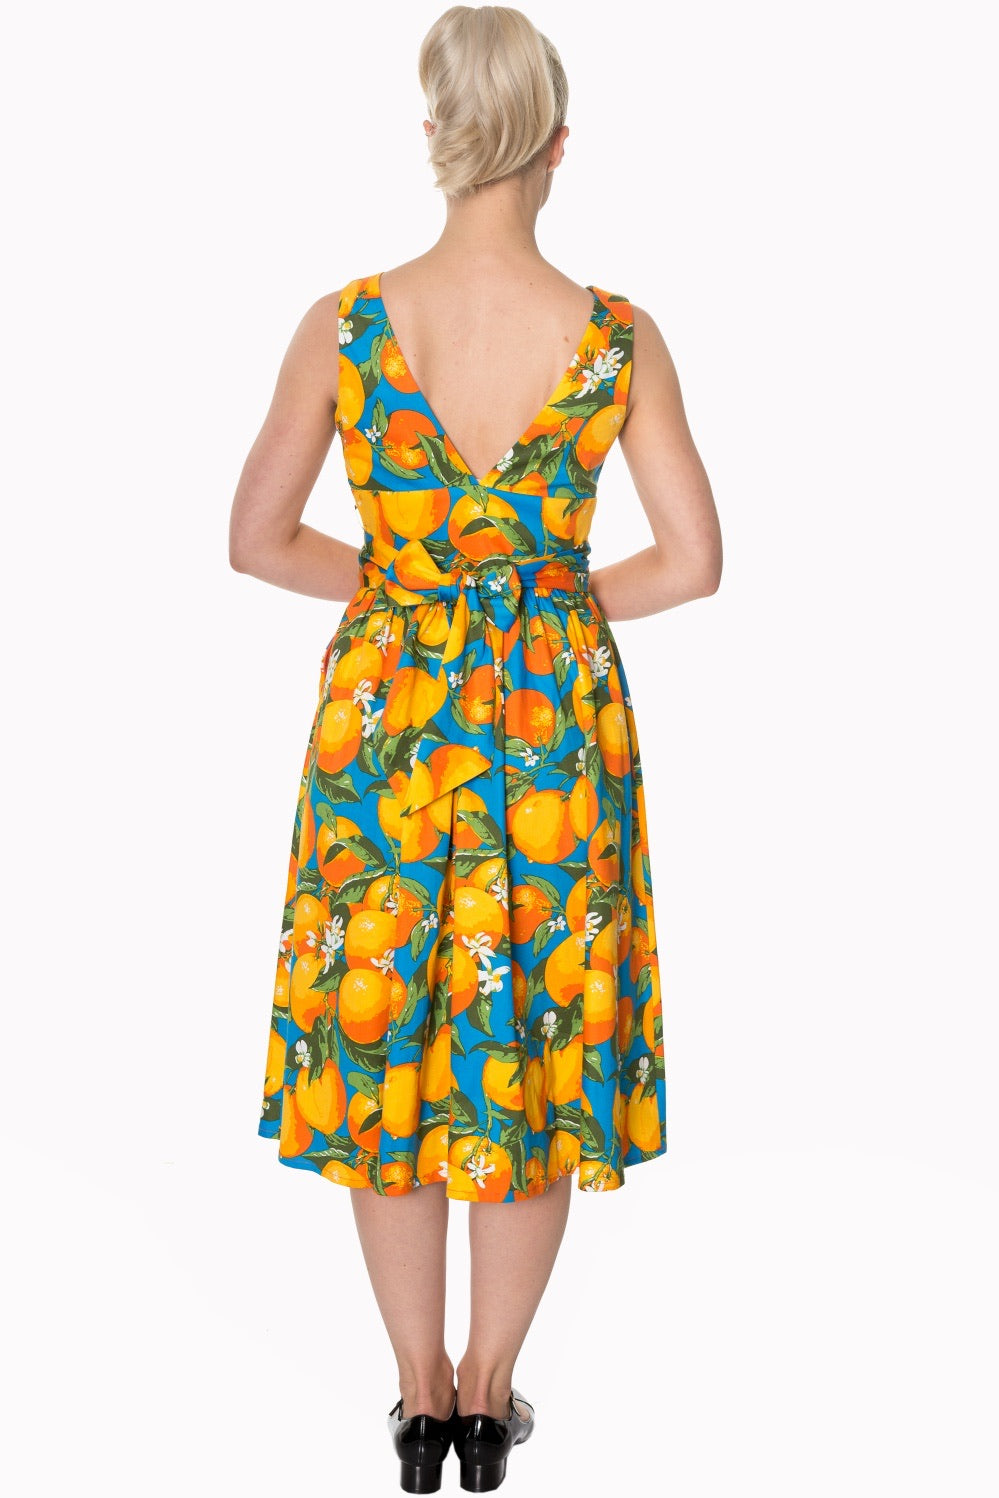 Orange Dress - Isabel’s Retro & Vintage Clothing